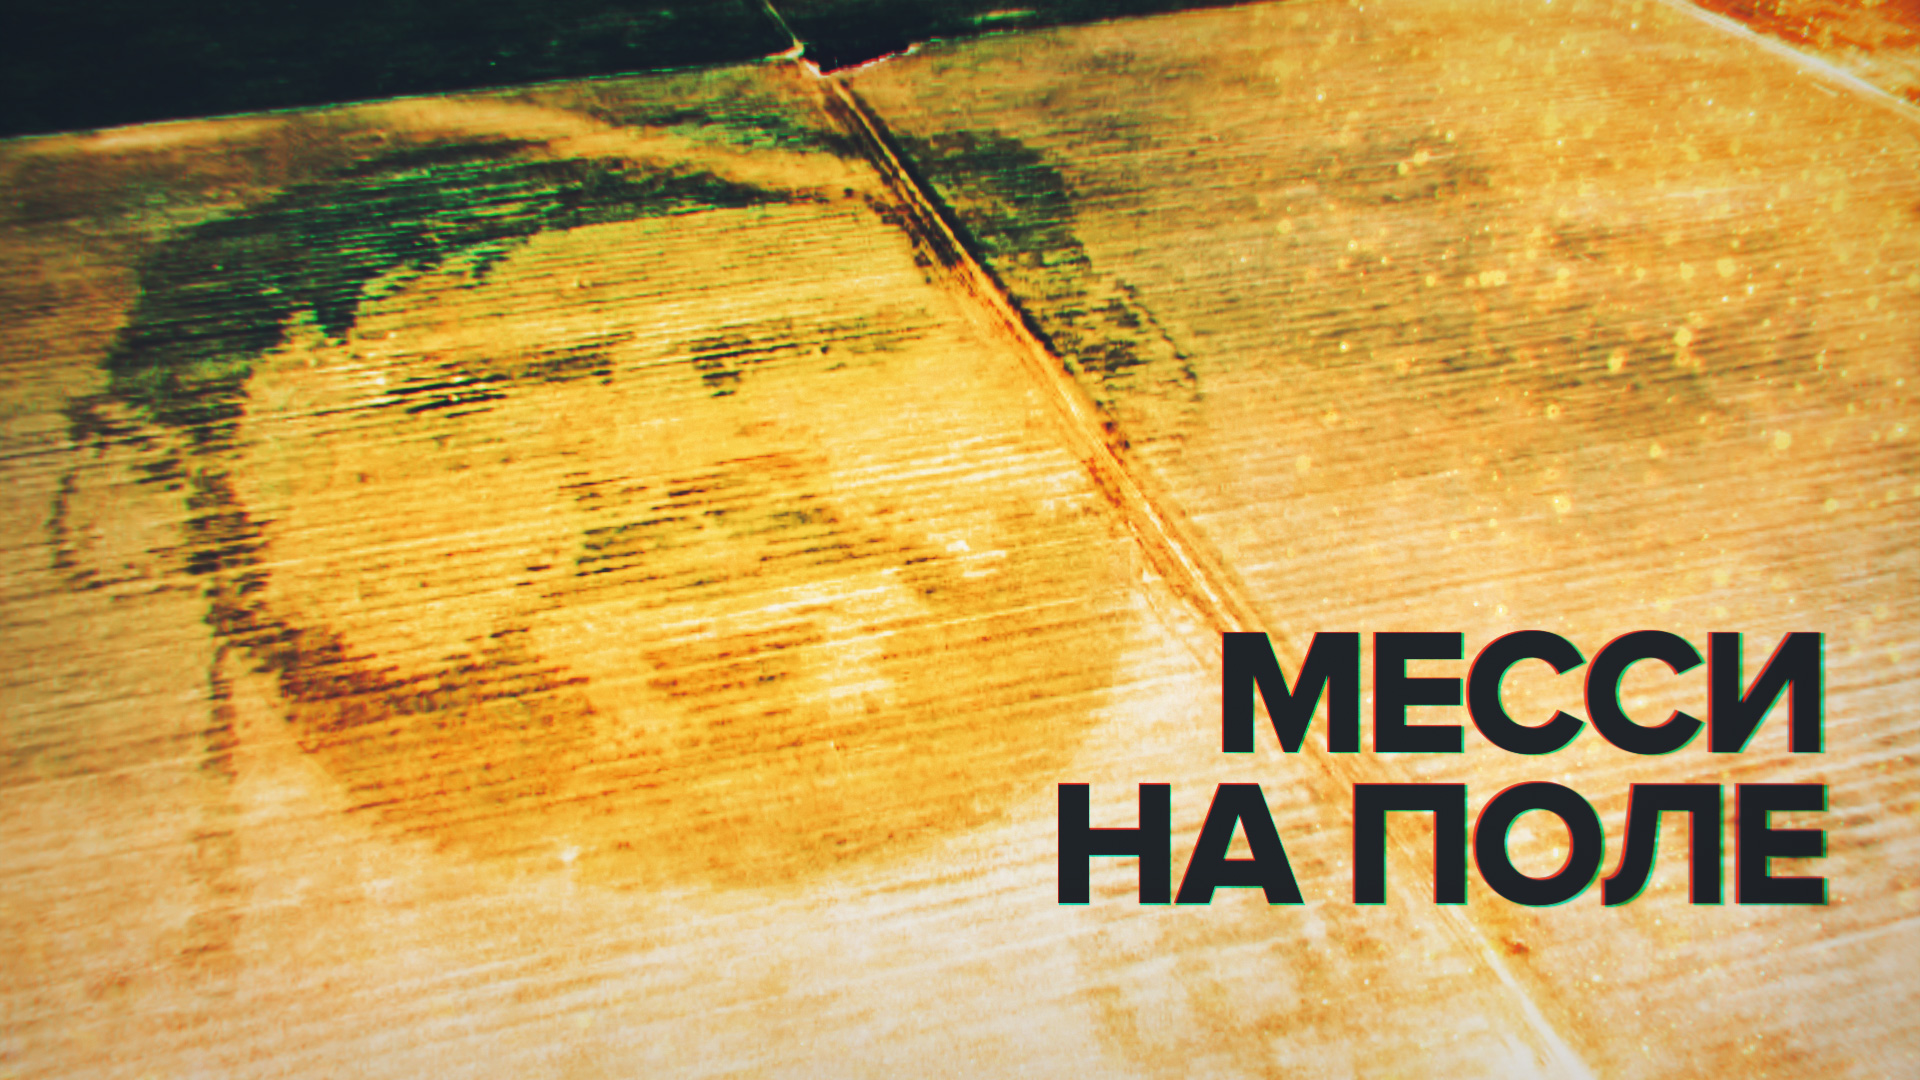 Футбол и сельское хозяйство: портрет Месси появился на кукурузном поле в Аргентине